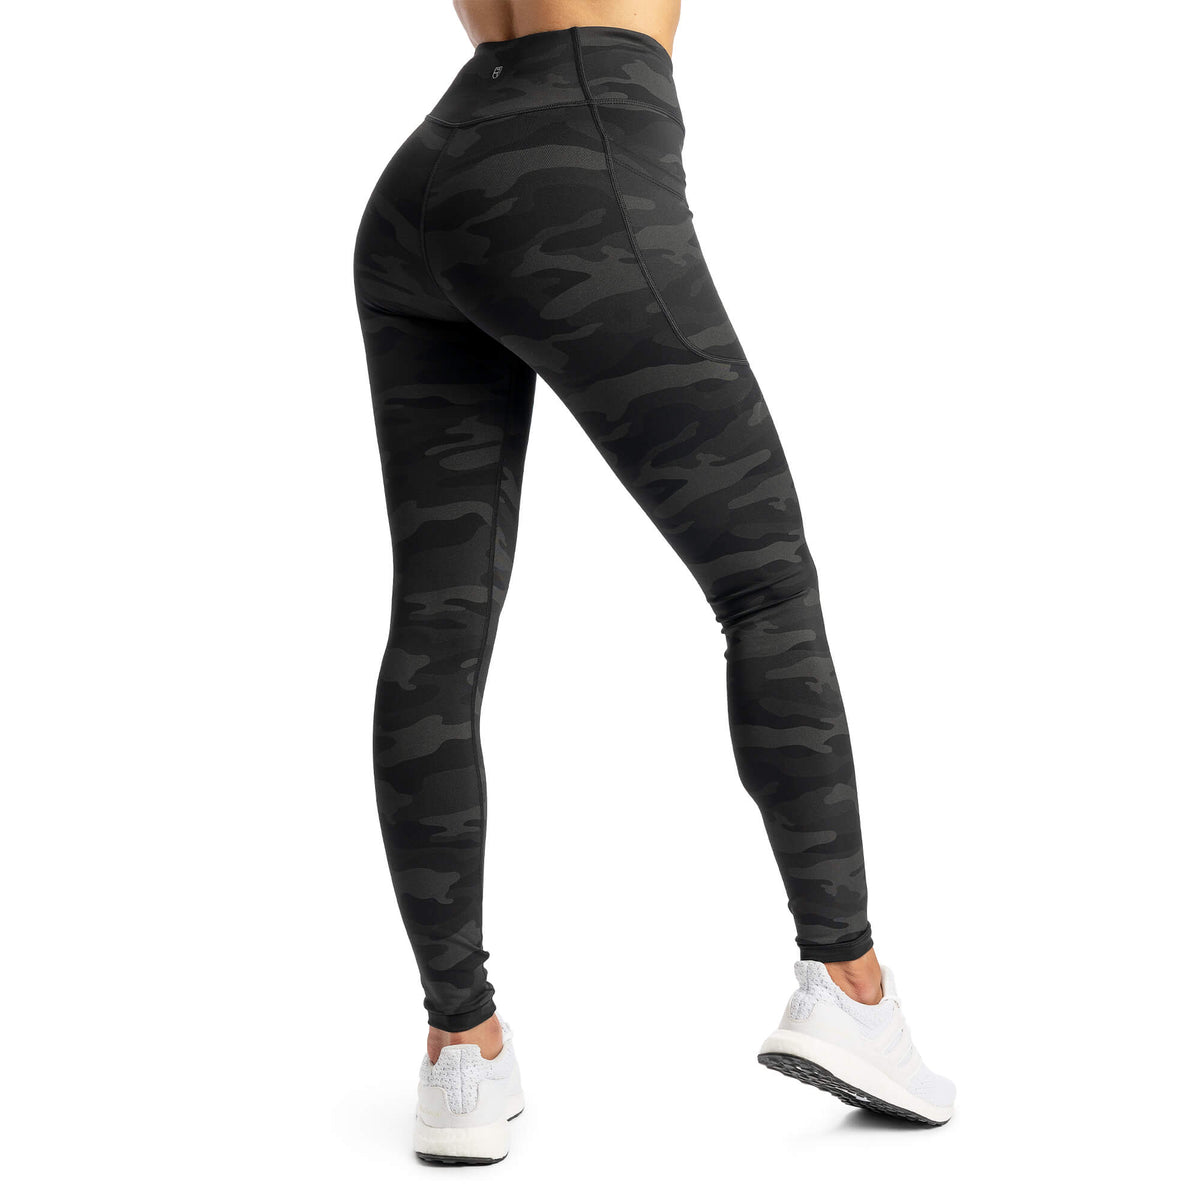 Pants & Jumpsuits, Leggings Black Color Cute Size L